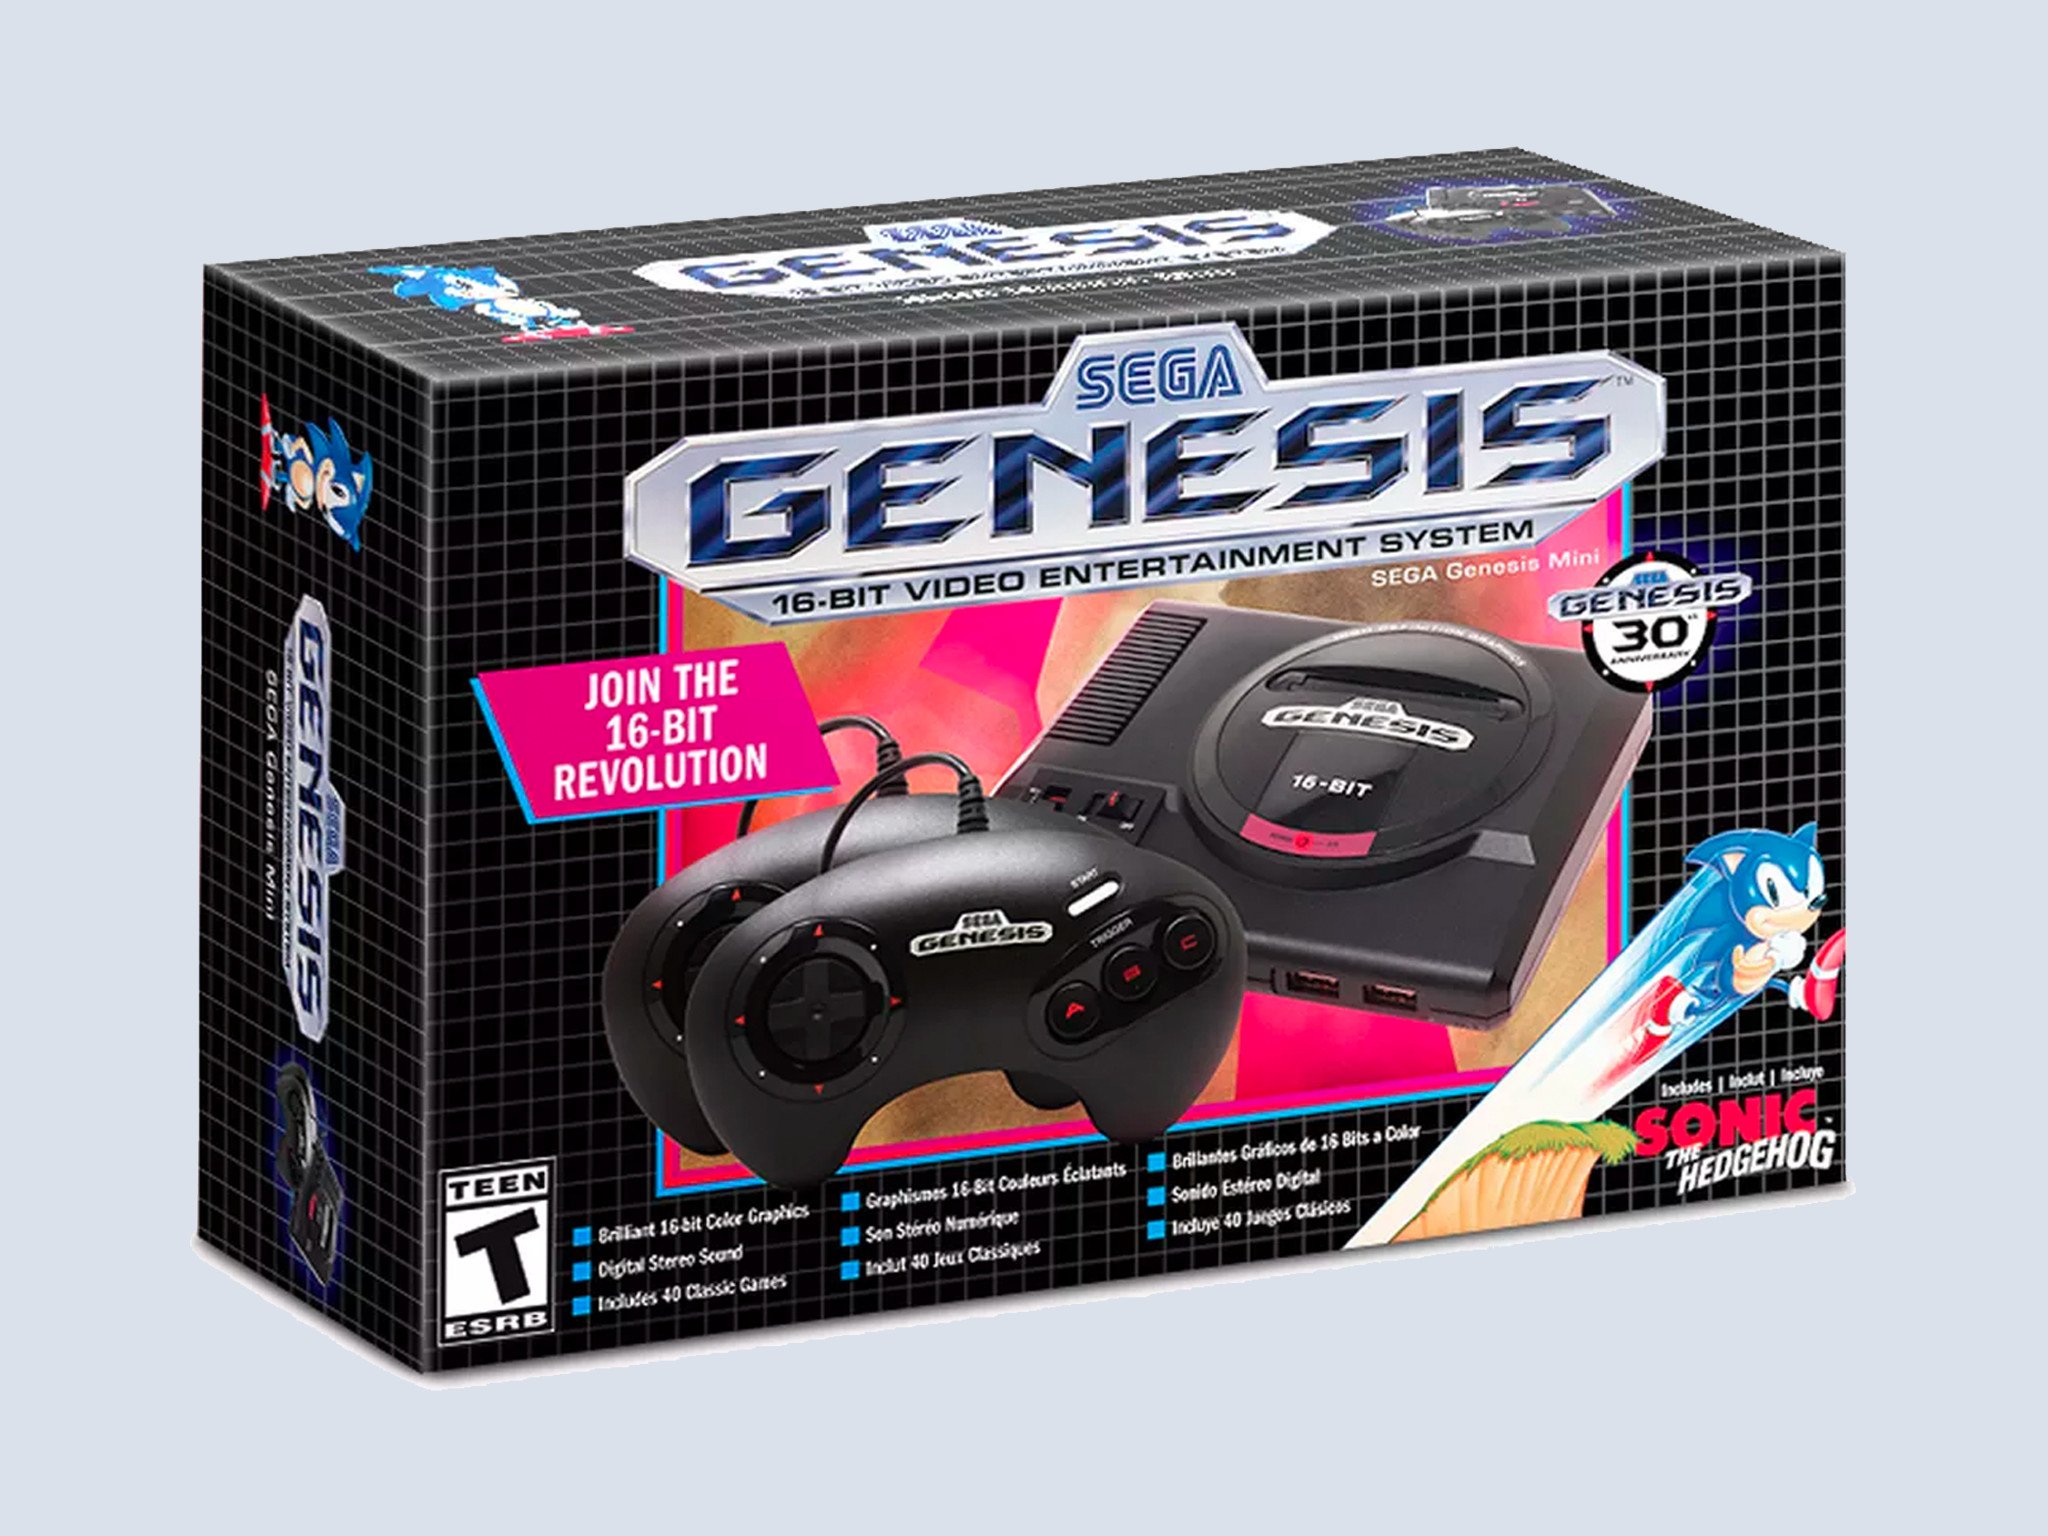 أعد تشغيل المفضلة من الماضي مع SEGA Genesis Mini للبيع مقابل 40 دولارًا فقط اليوم 47